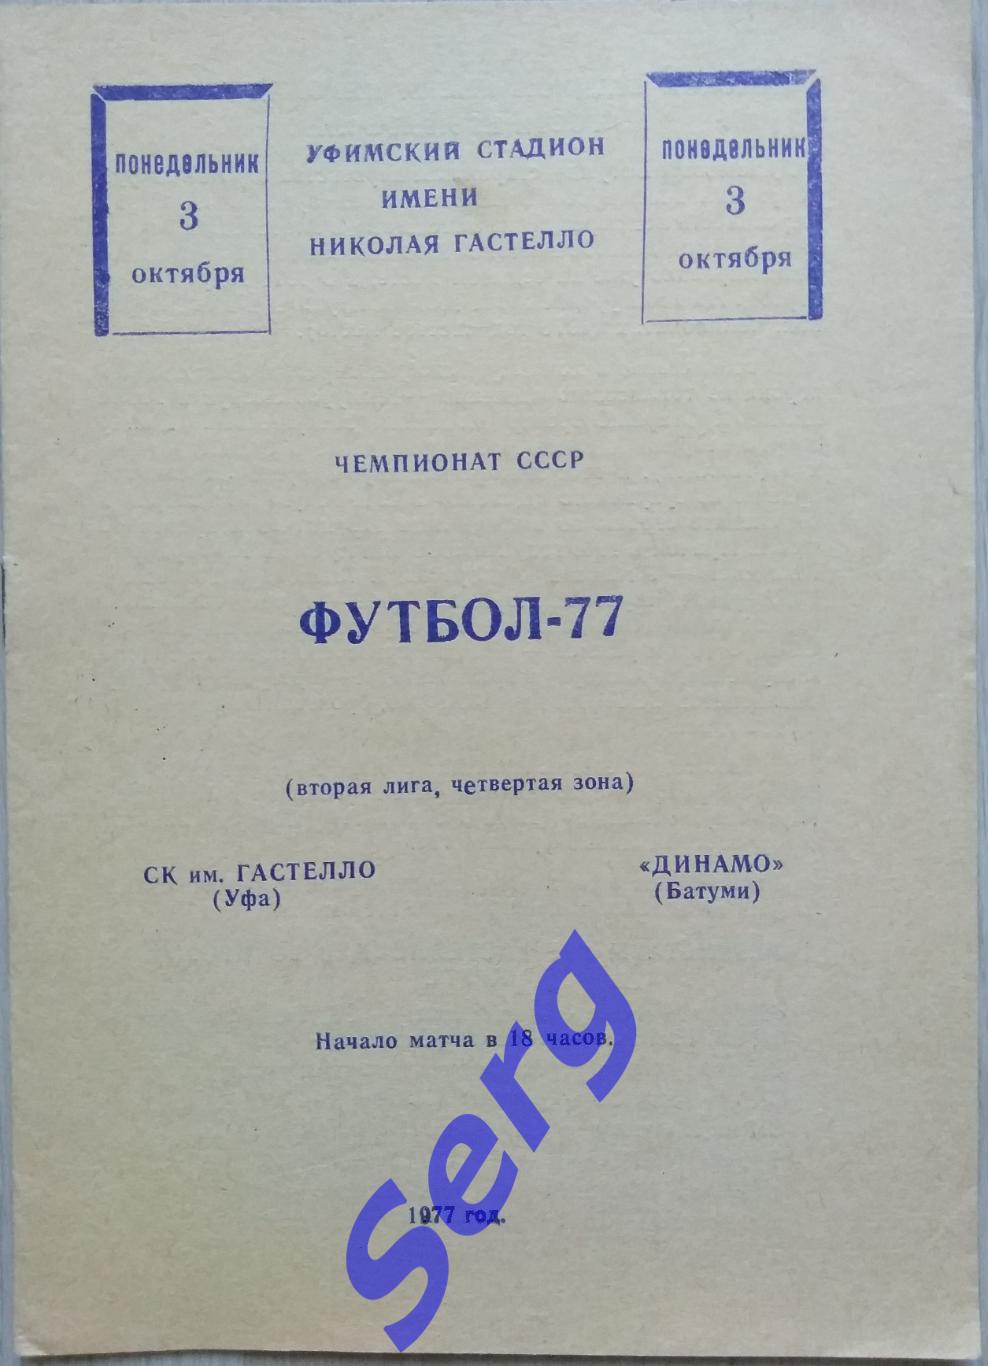 СК имени Гастелло Уфа - Динамо Батуми - 03 октября 1977 год